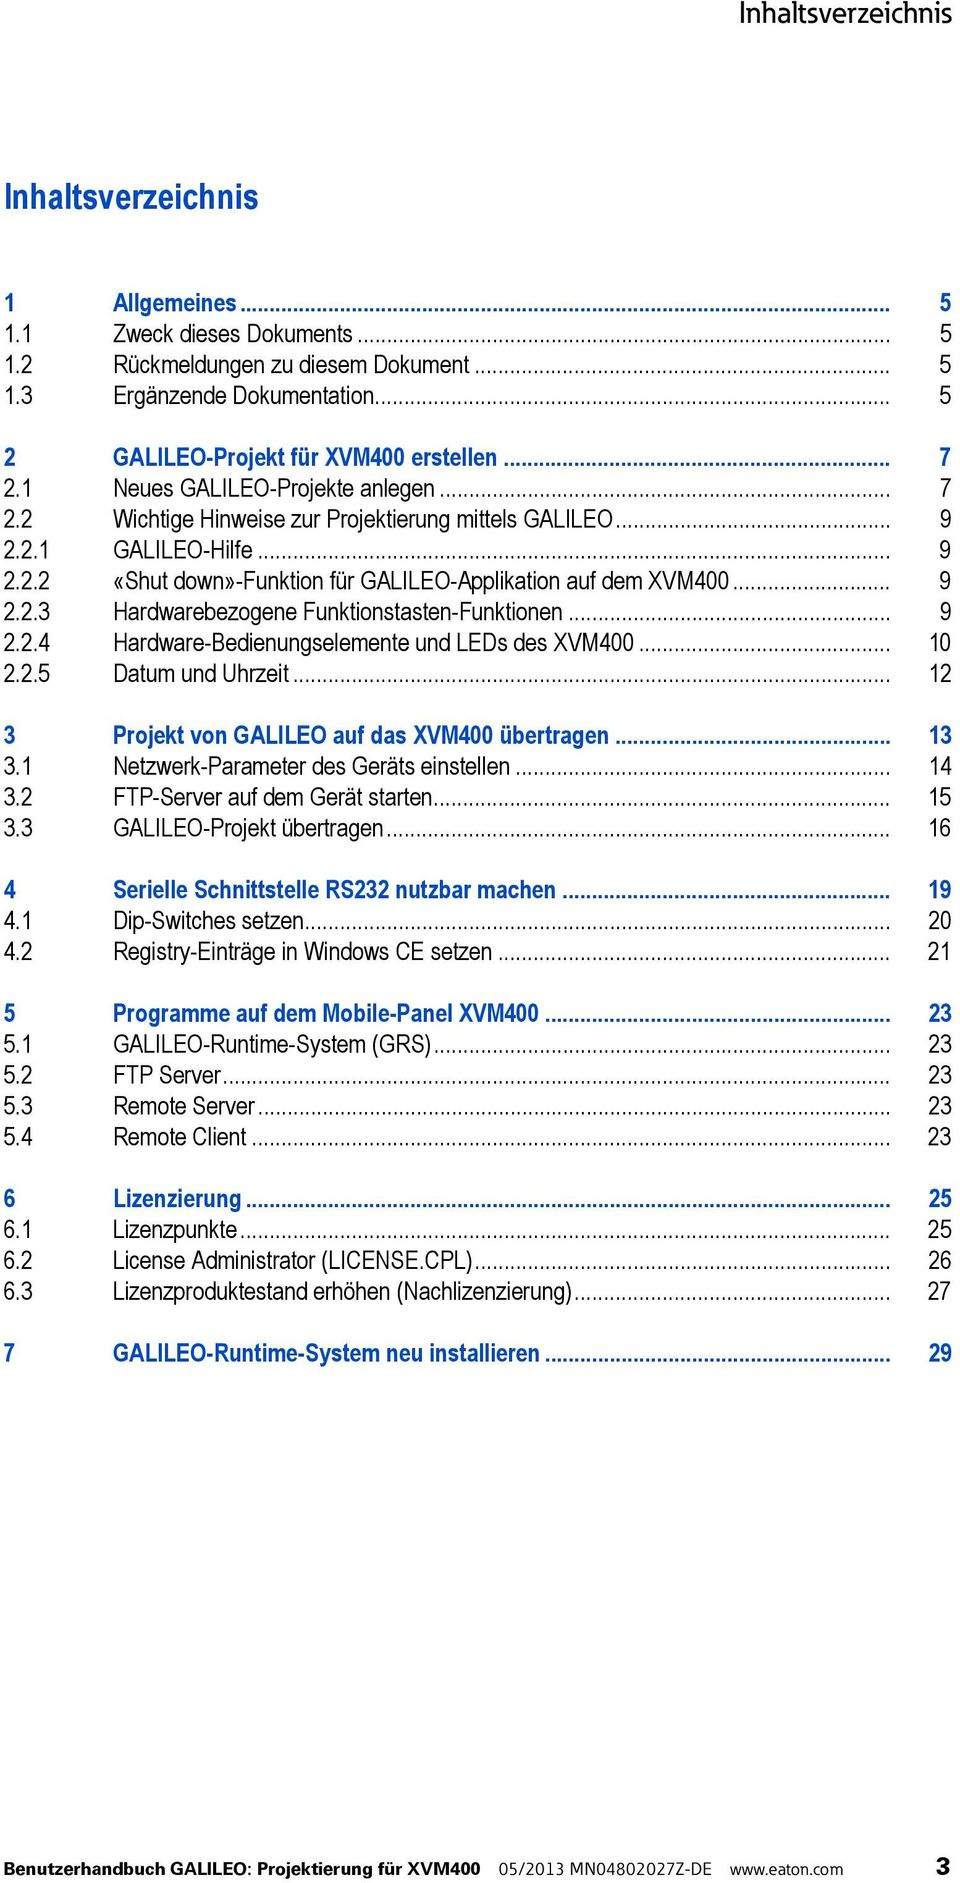 .. 9 2.2.3 Hardwarebezogene Funktionstasten-Funktionen... 9 2.2.4 Hardware-Bedienungselemente und LEDs des XVM400... 10 2.2.5 Datum und Uhrzeit... 12 3 Projekt von GALILEO auf das XVM400 übertragen.